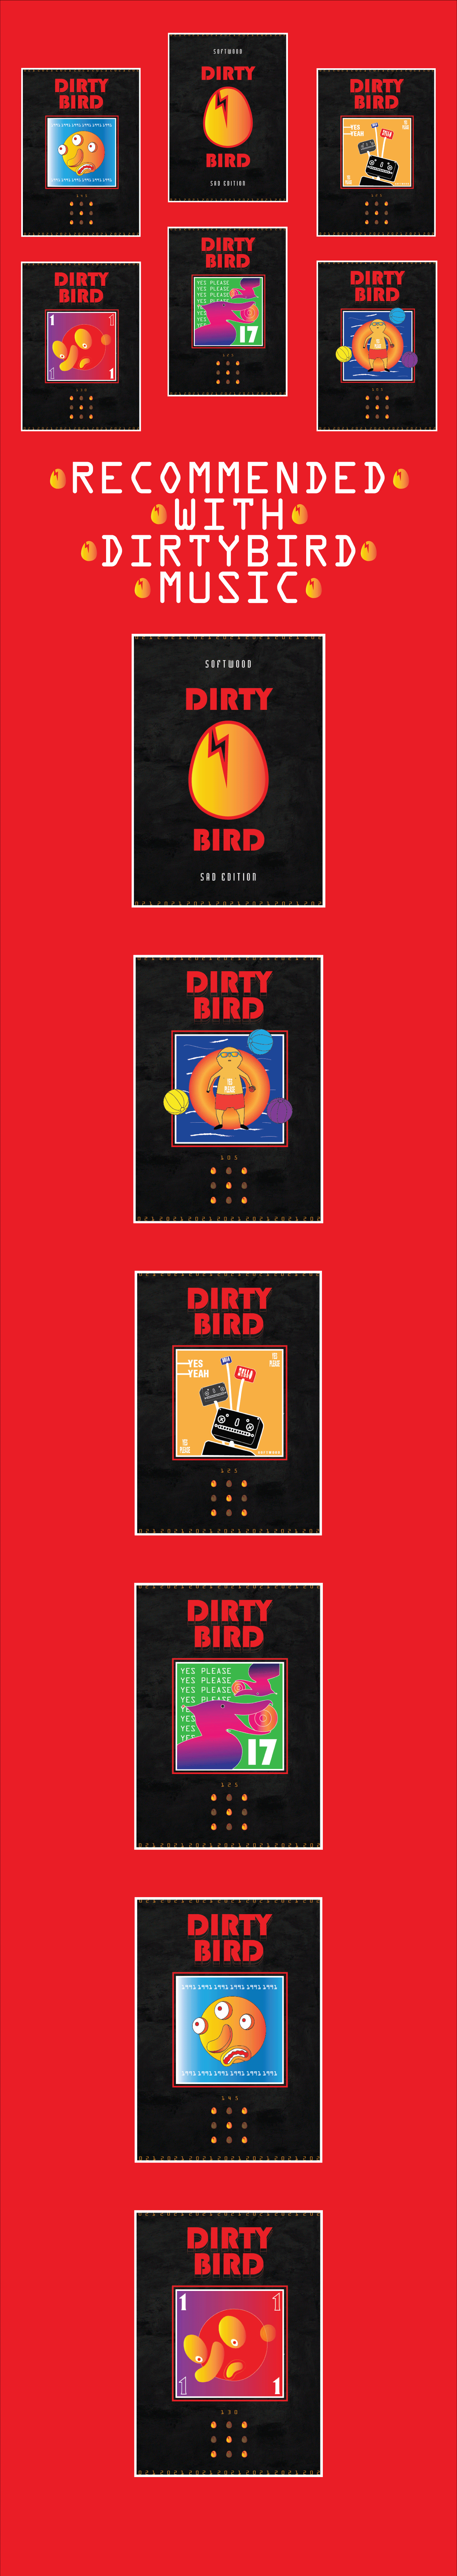 art artworks Dirtybird music poster red